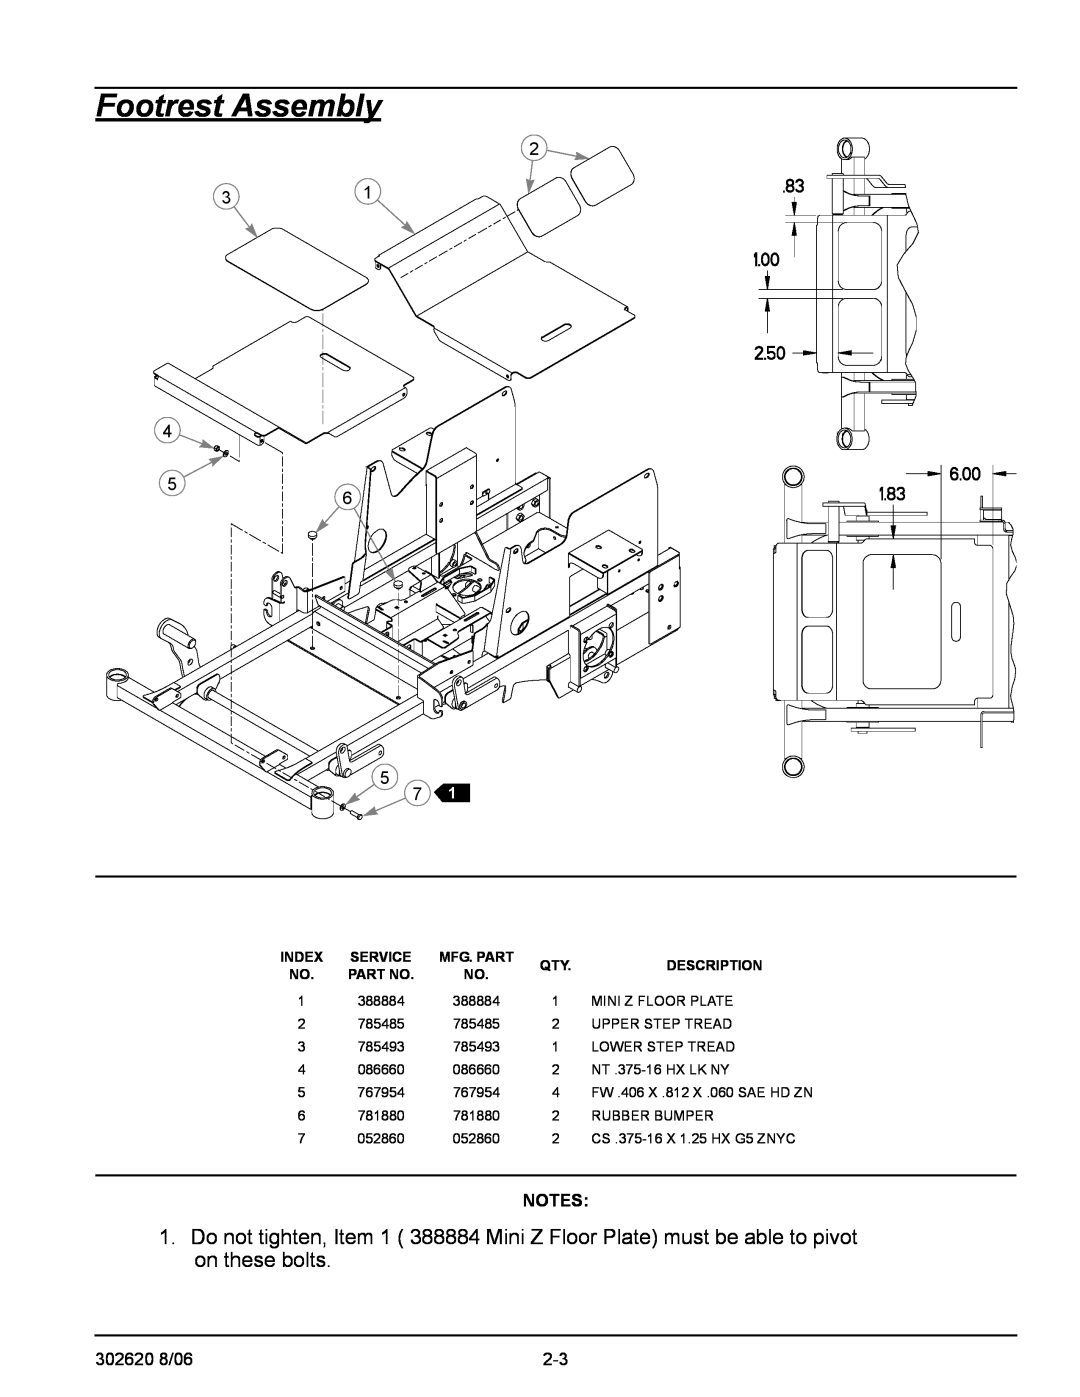 Hustler Turf Super Mini Z manual Footrest Assembly, Index, Service, Description 